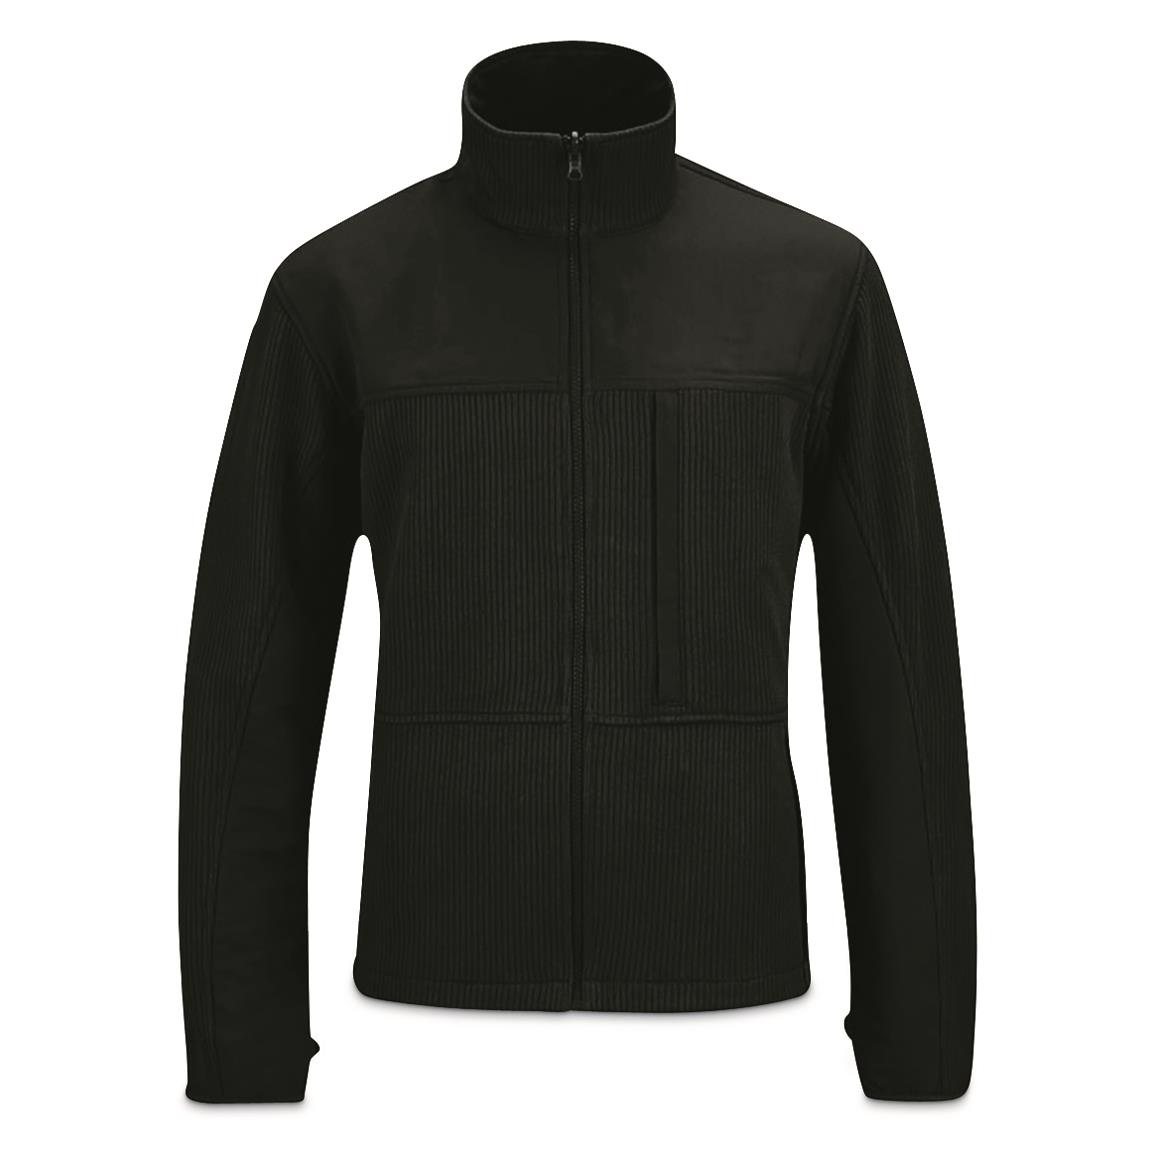 Propper Full-zip Tech Sweater, Black